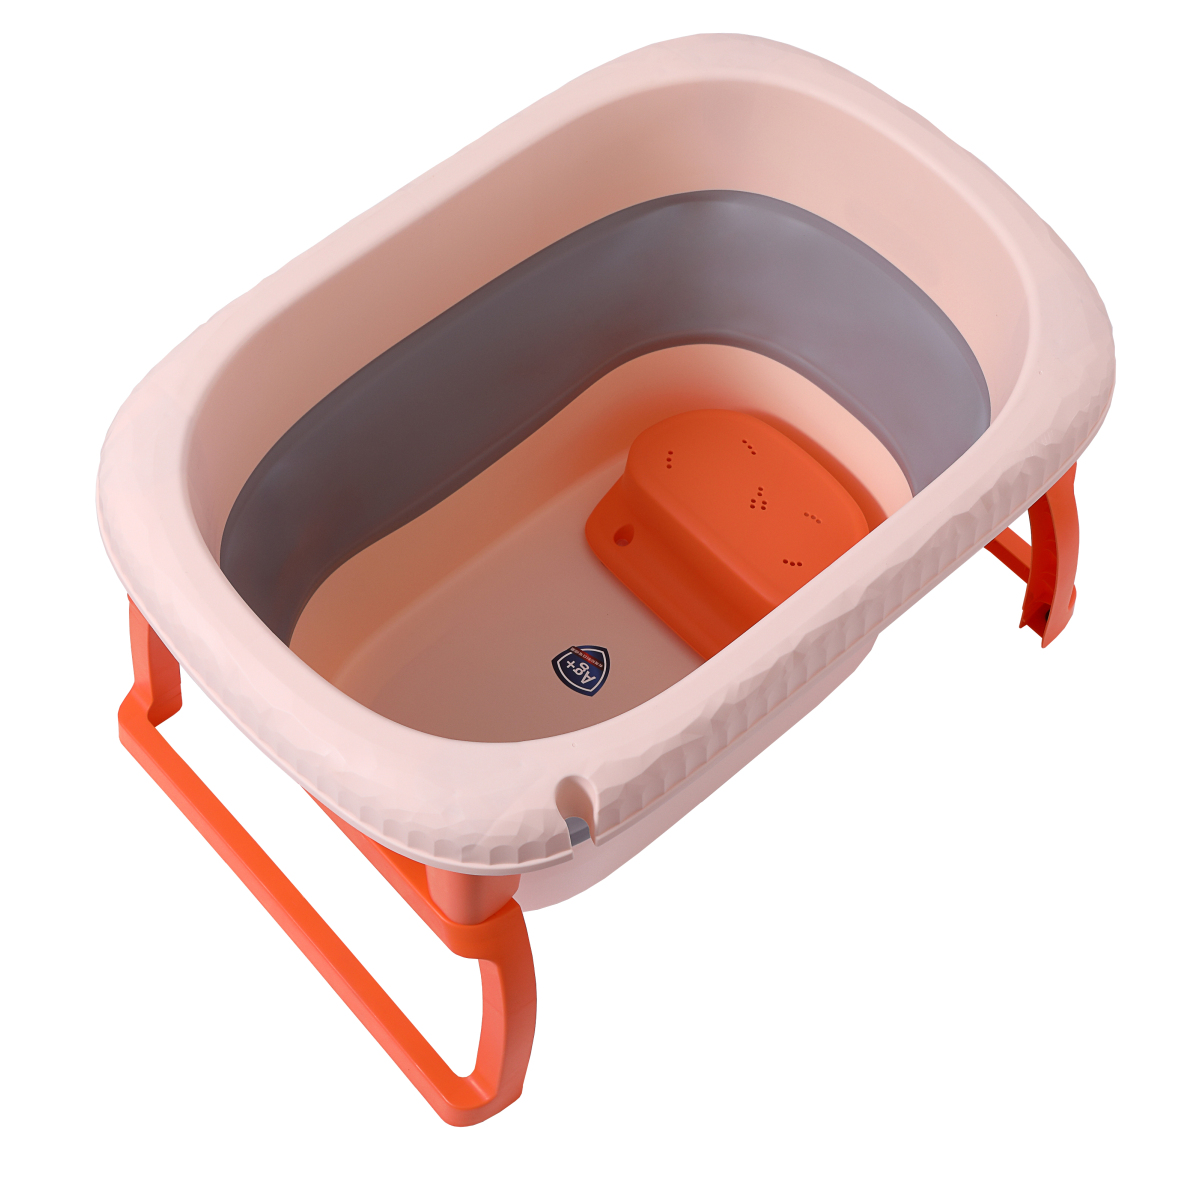 Grande baignoire pliable ultra compact, baignoire enfant en plastique avec  bouchon de vidange, pieds pliable, antidérapant et facile à ranger (orange)